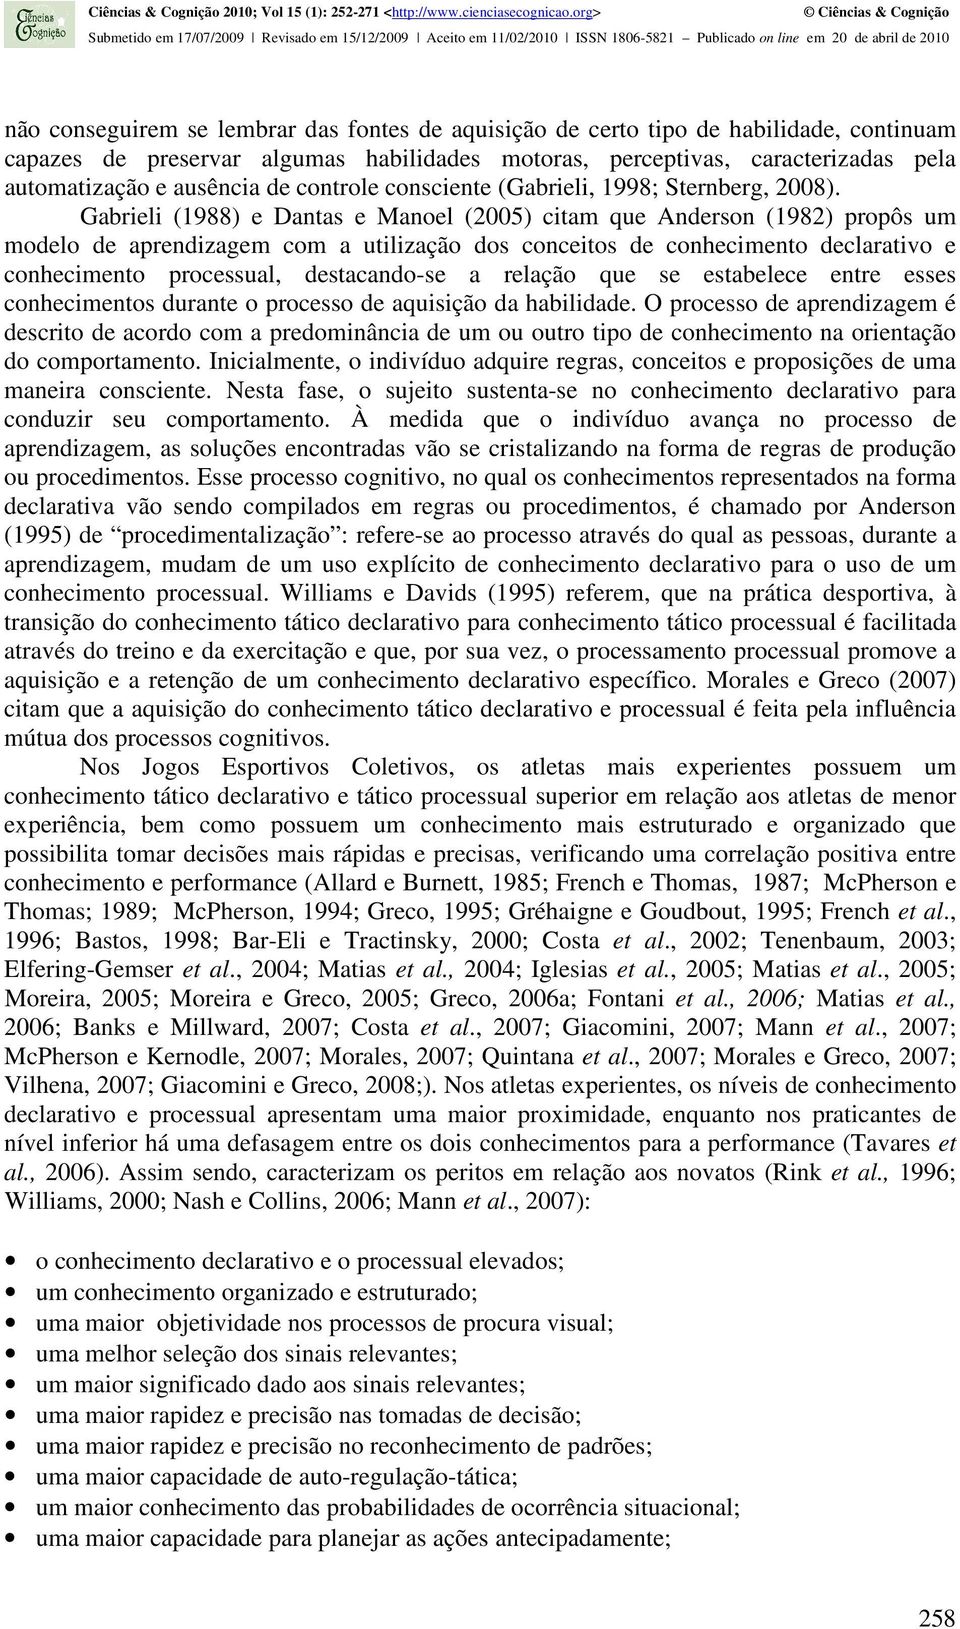 Gabrieli (1988) e Dantas e Manoel (2005) citam que Anderson (1982) propôs um modelo de aprendizagem com a utilização dos conceitos de conhecimento declarativo e conhecimento processual, destacando-se